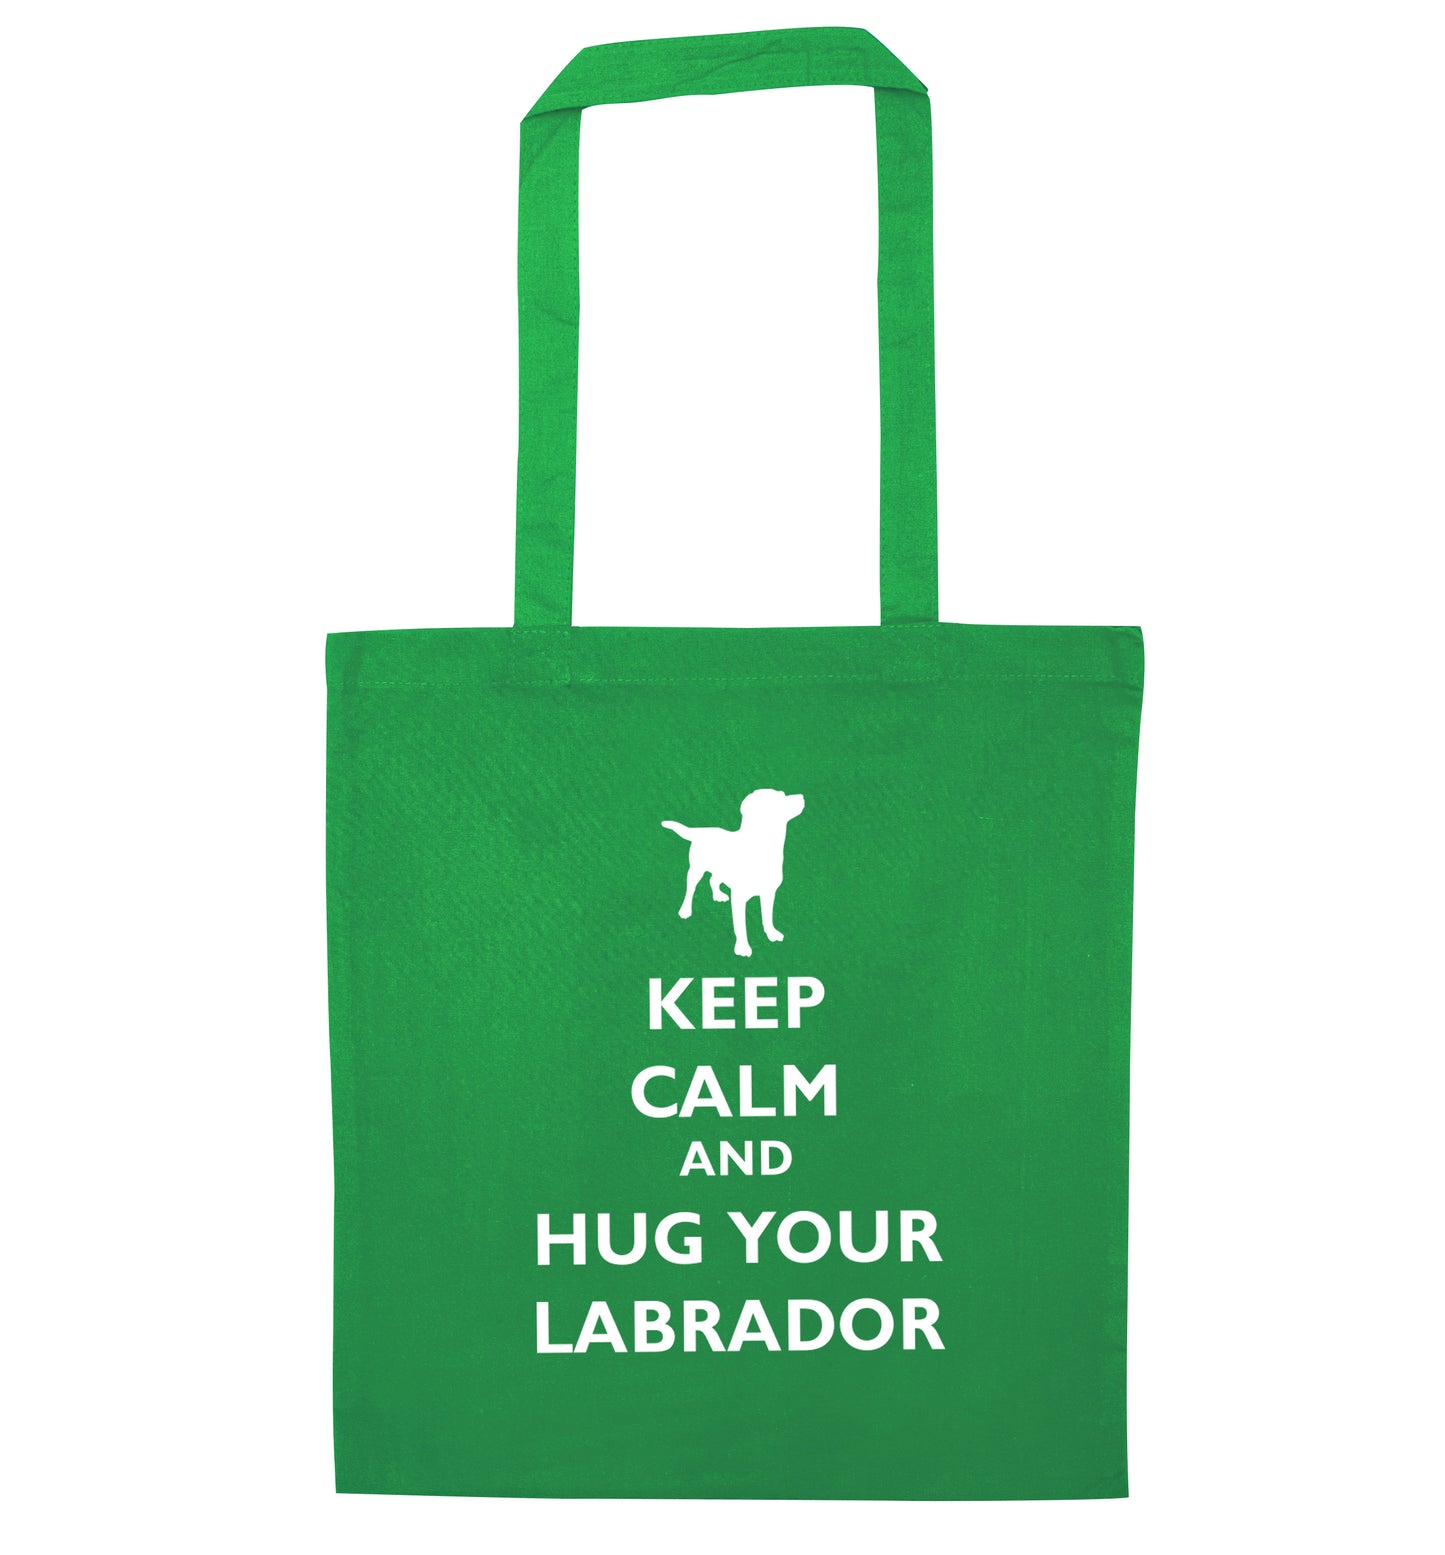 Keep calm and hug your labrador green tote bag